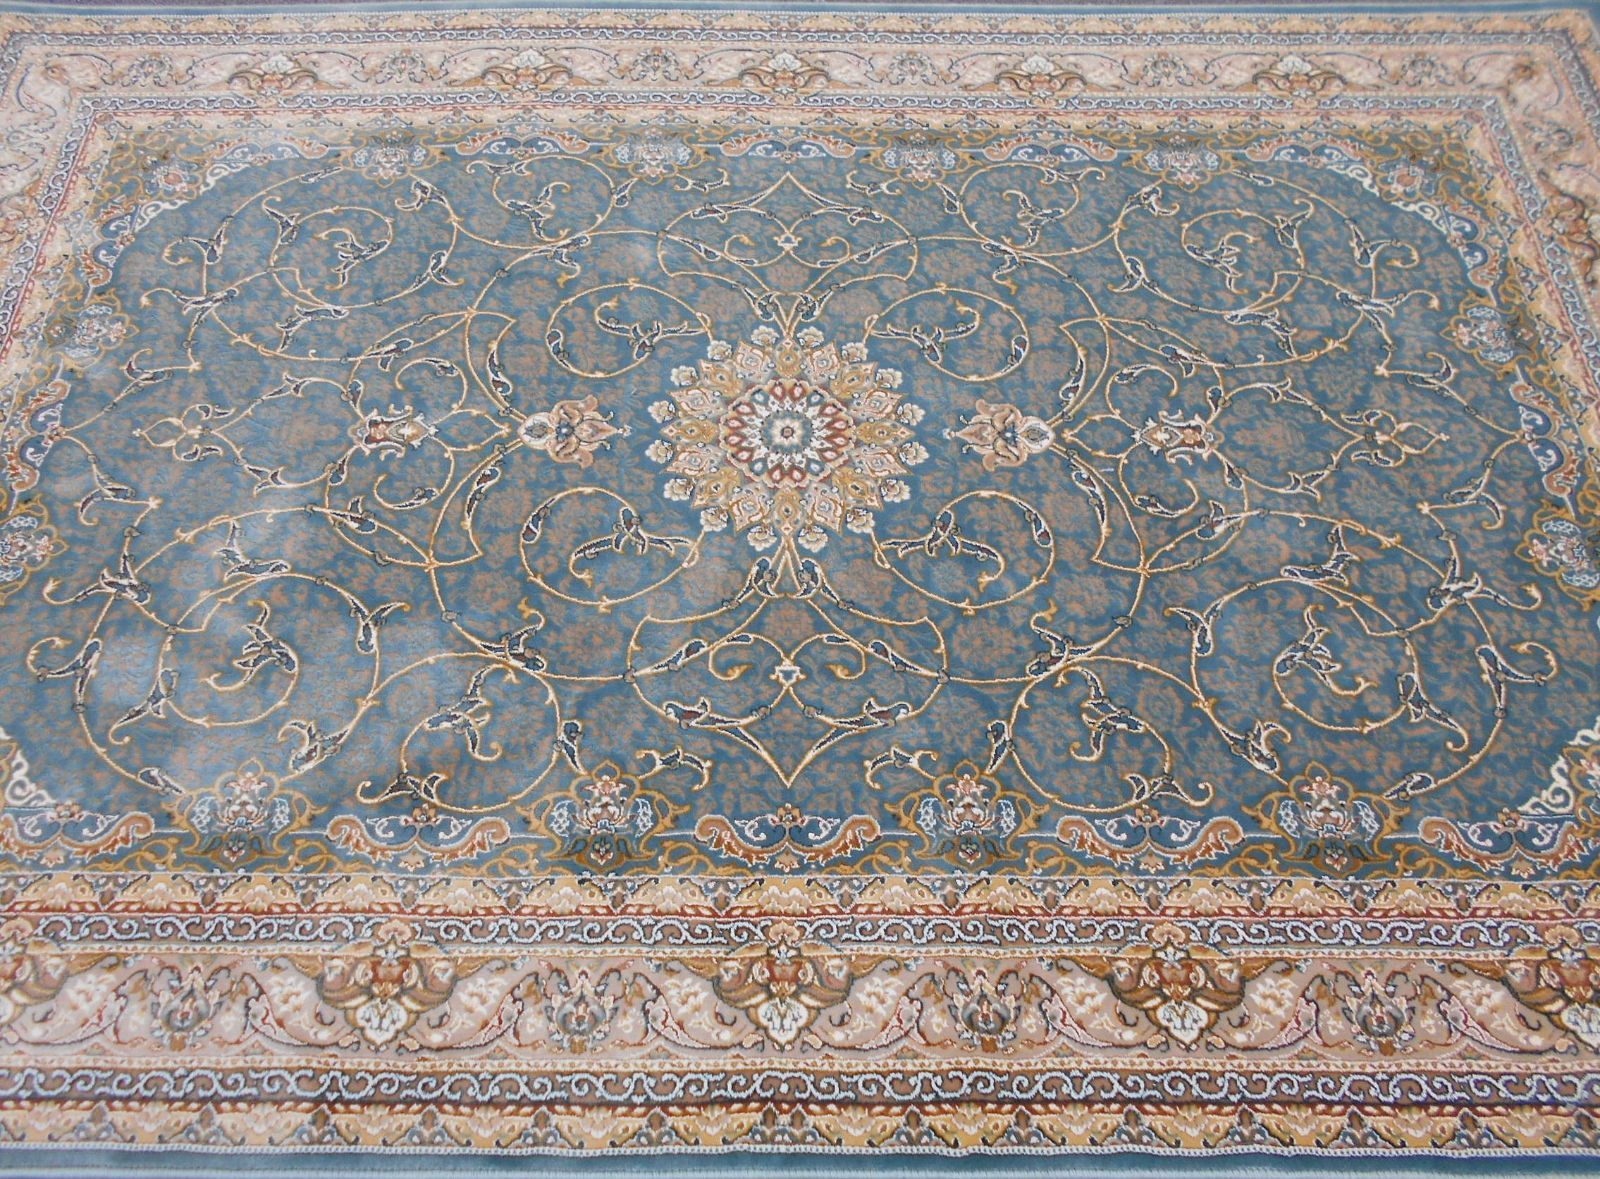 感謝価格】 高品質 高密度 立体柄 本場イラン産 絨毯 100×150cm-200392